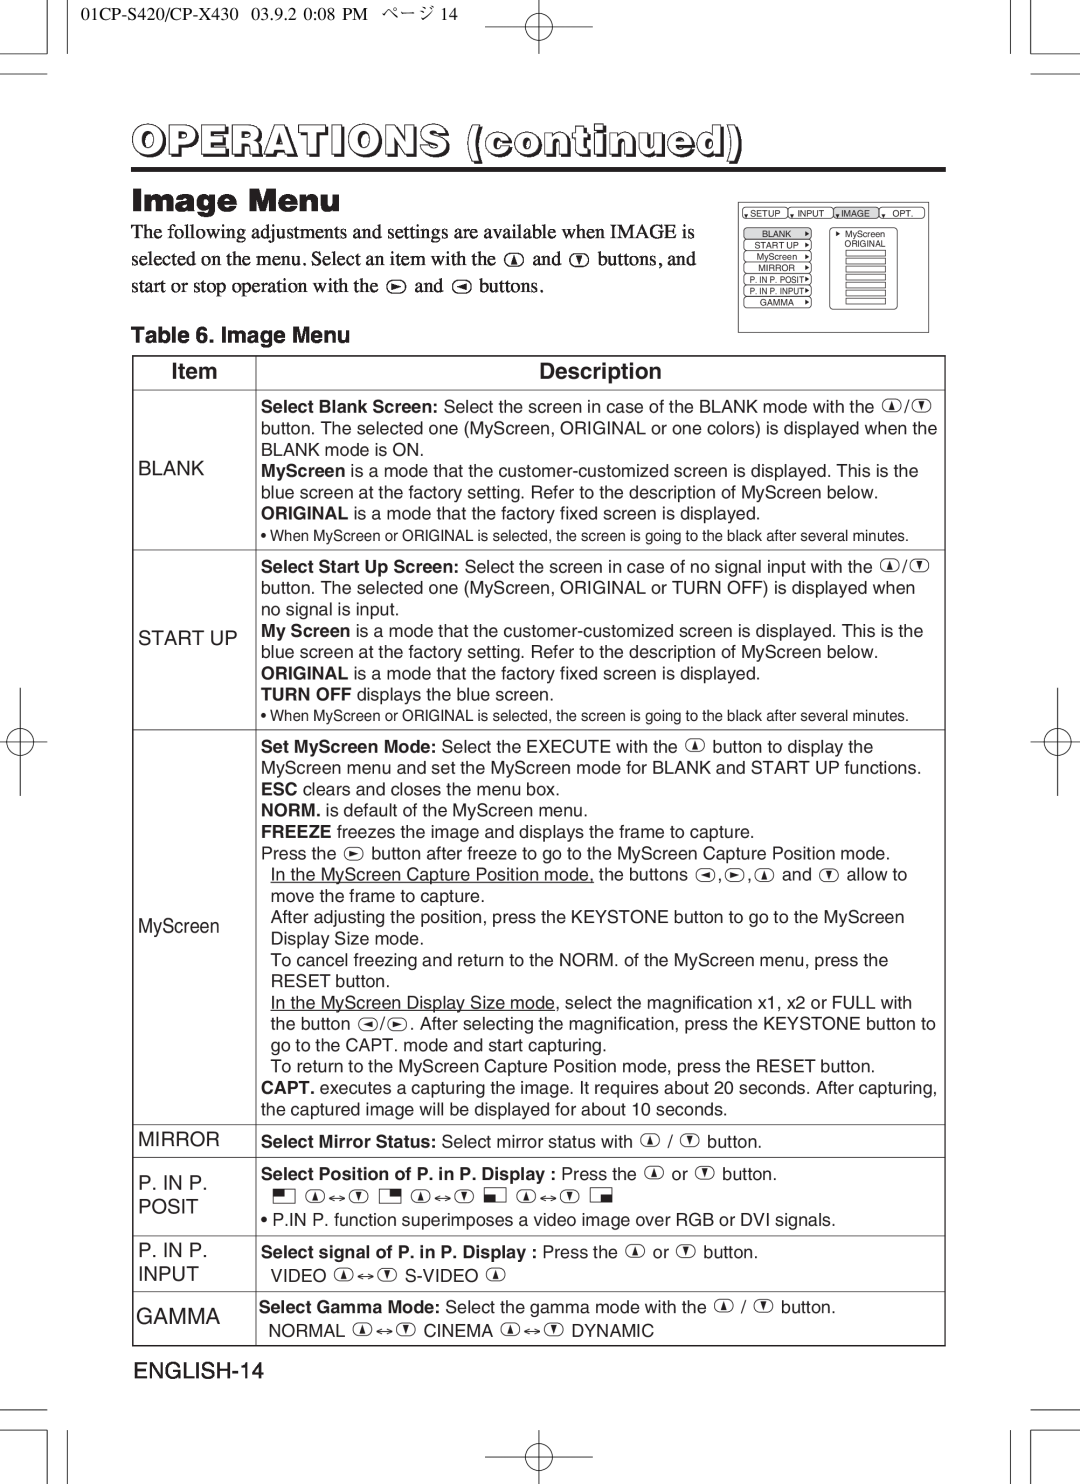 Hitachi CP-S420WA, CP-X430WA user manual Image Menu, OPERATIONS continued, Description 